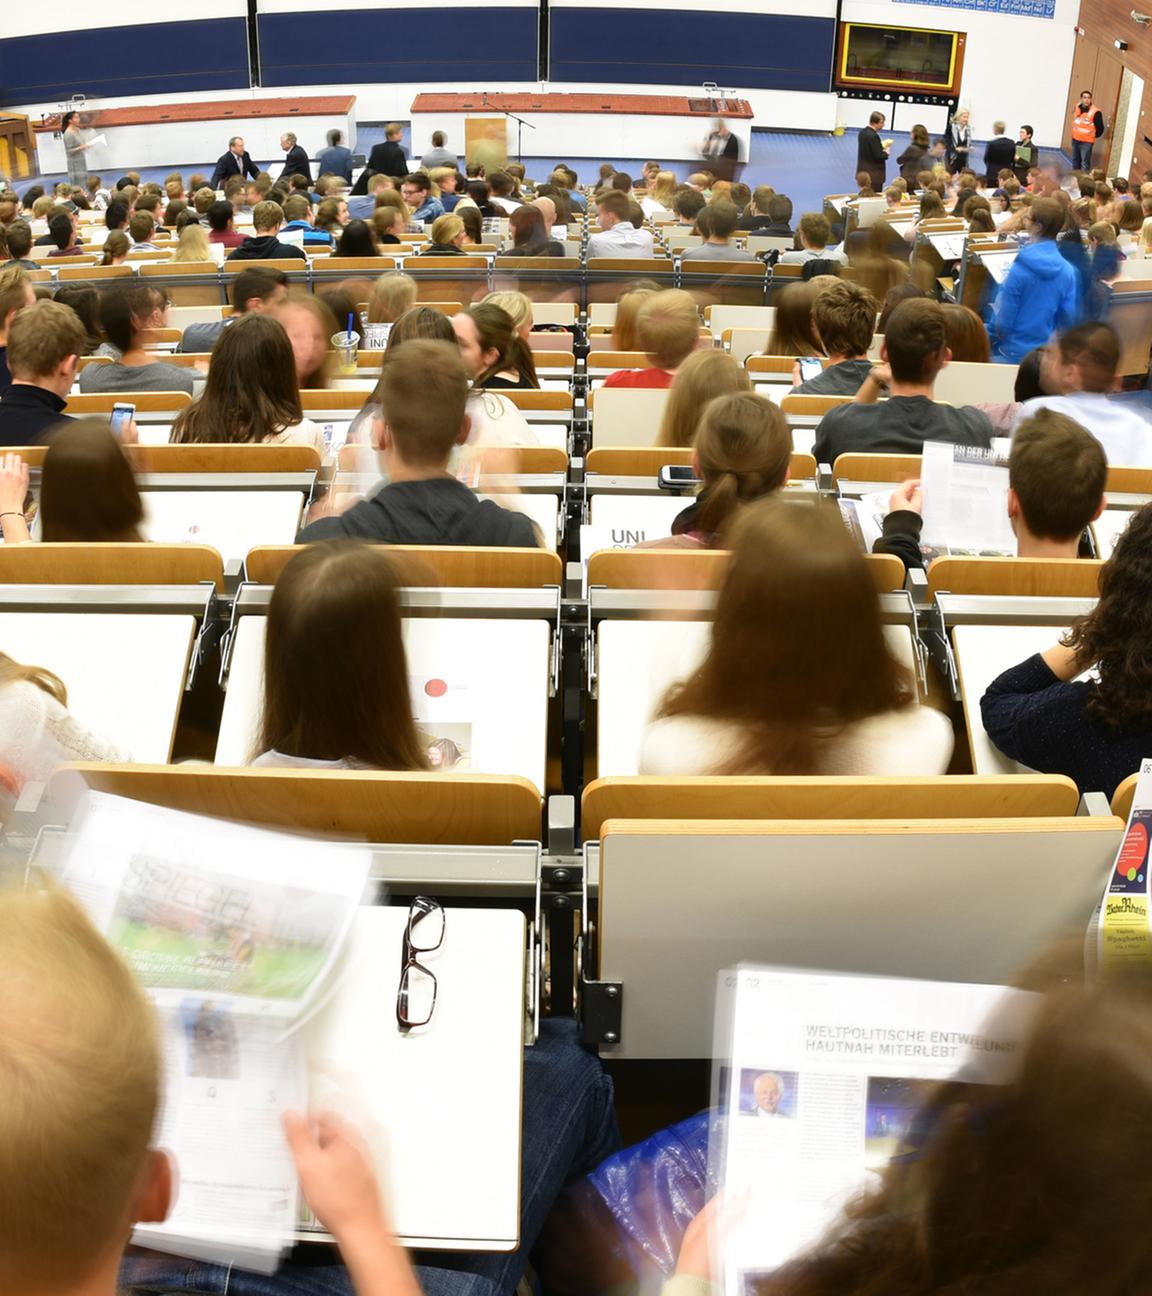 Archiv: Studenten nehmen am 13.10.2014 in Heidelberg in einem Hörsaal der Universität an einer Erstsemester-Veranstaltung teil.